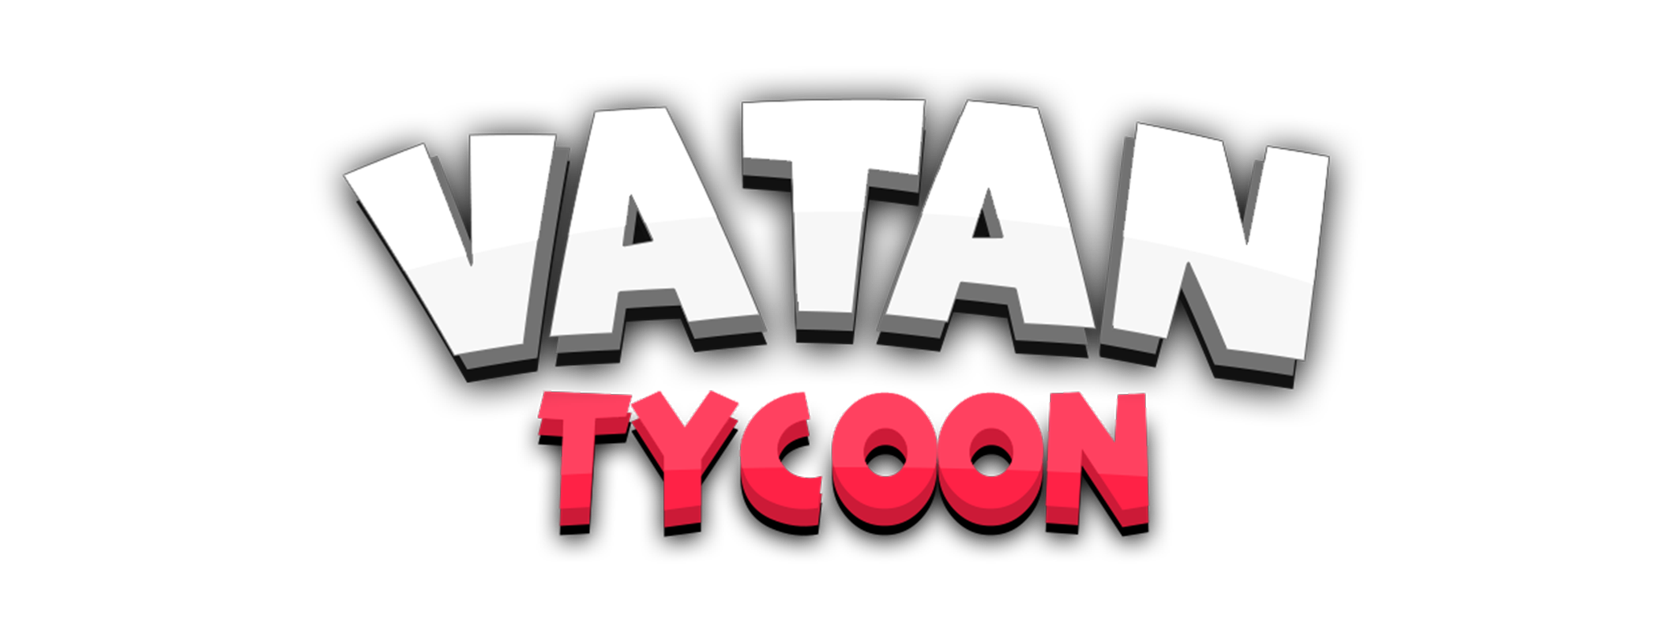 Vatan Tycoon